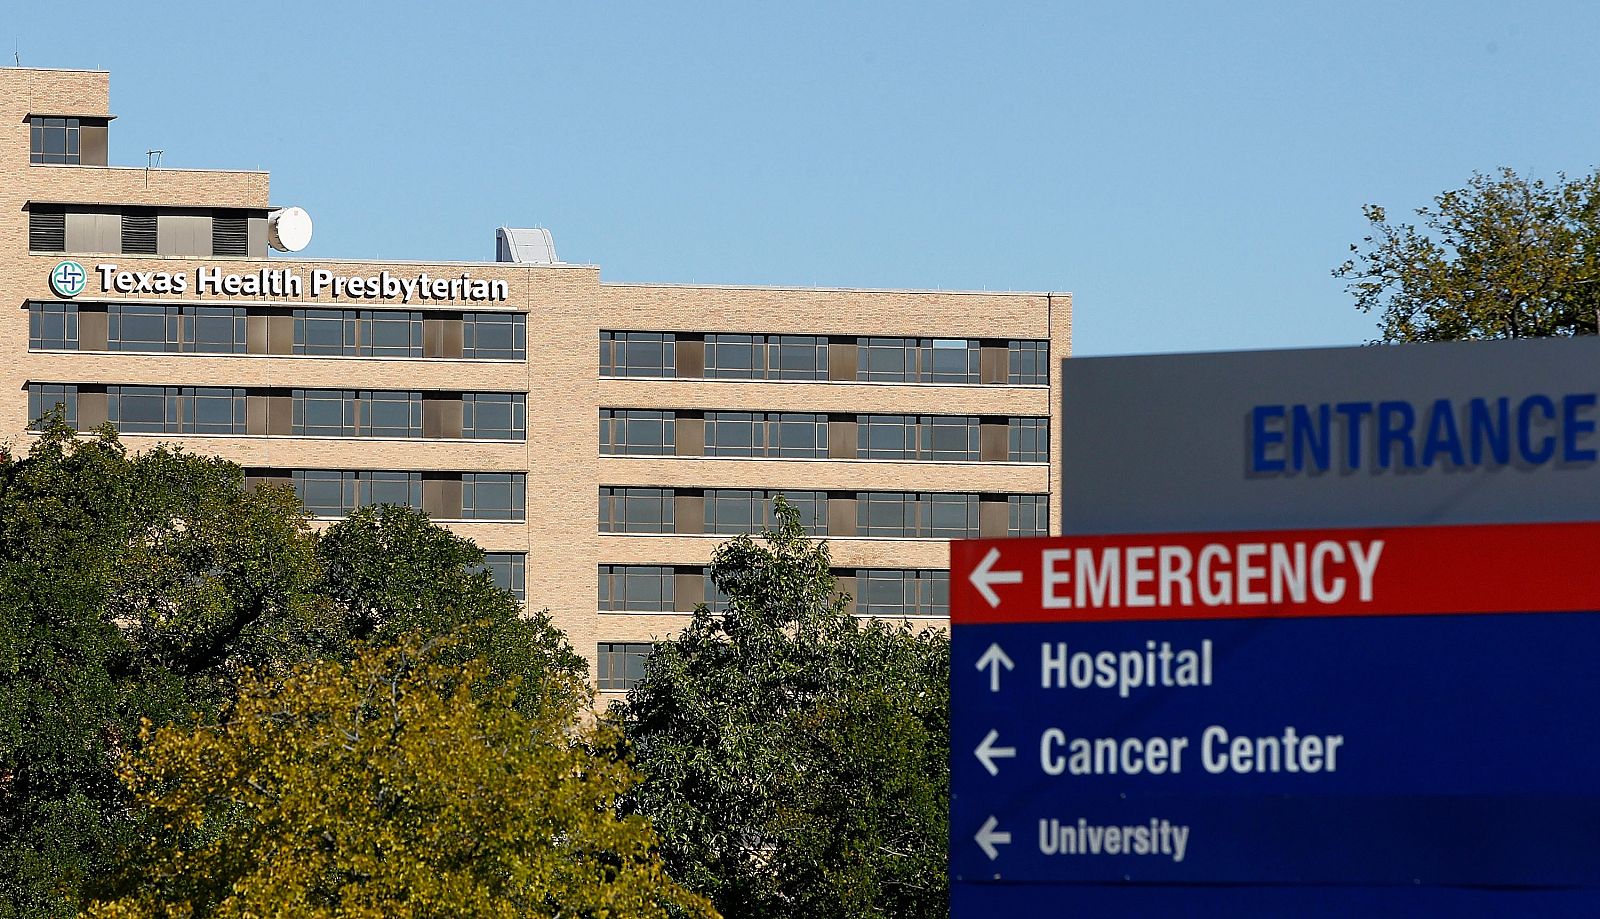 El hospital presbiteriano de Texas, donde está ingresada la enfermera contaminada por ébola